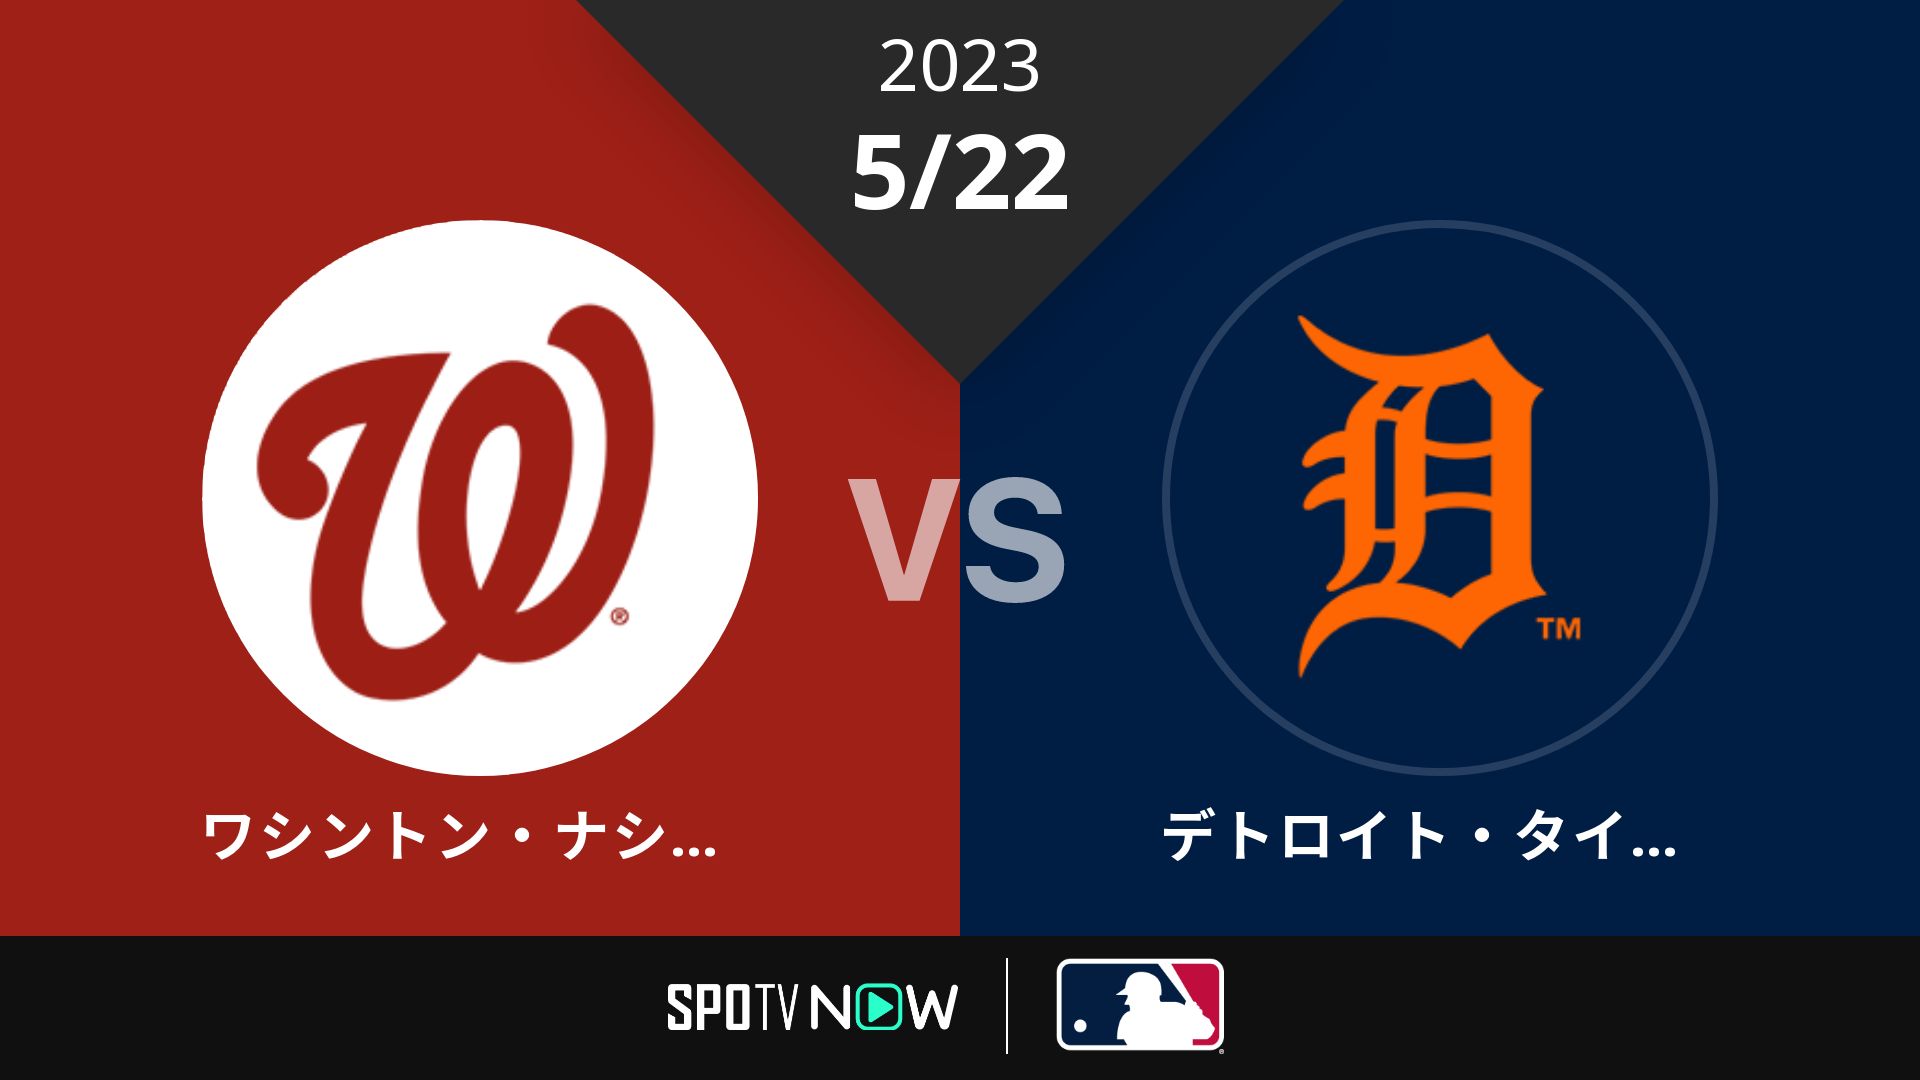 2023/5/22 ナショナルズ vs タイガース [MLB]